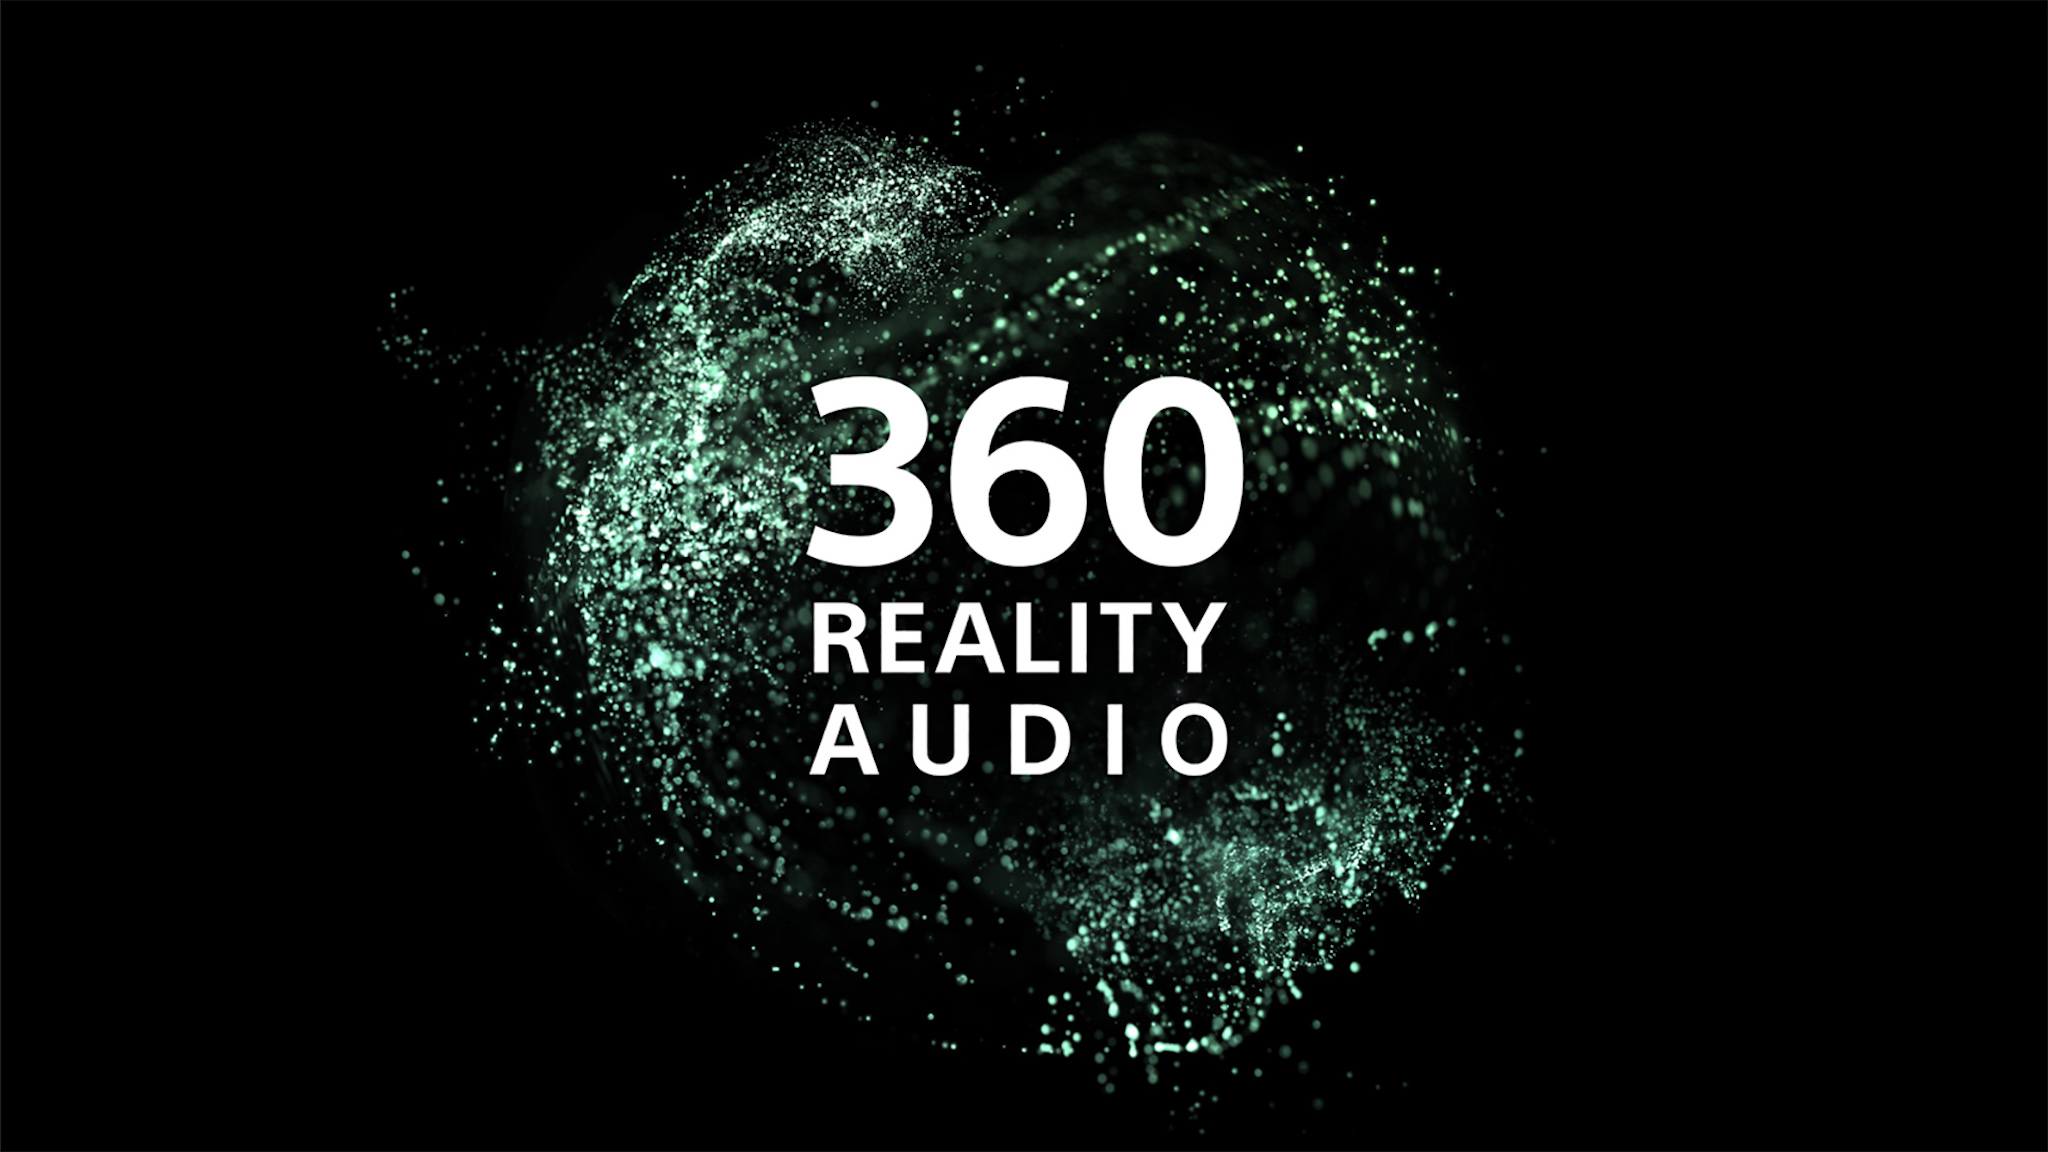 Google và Sony đang hợp tác để tích hợp công nghệ âm thanh 360 Reality Audio vào Android